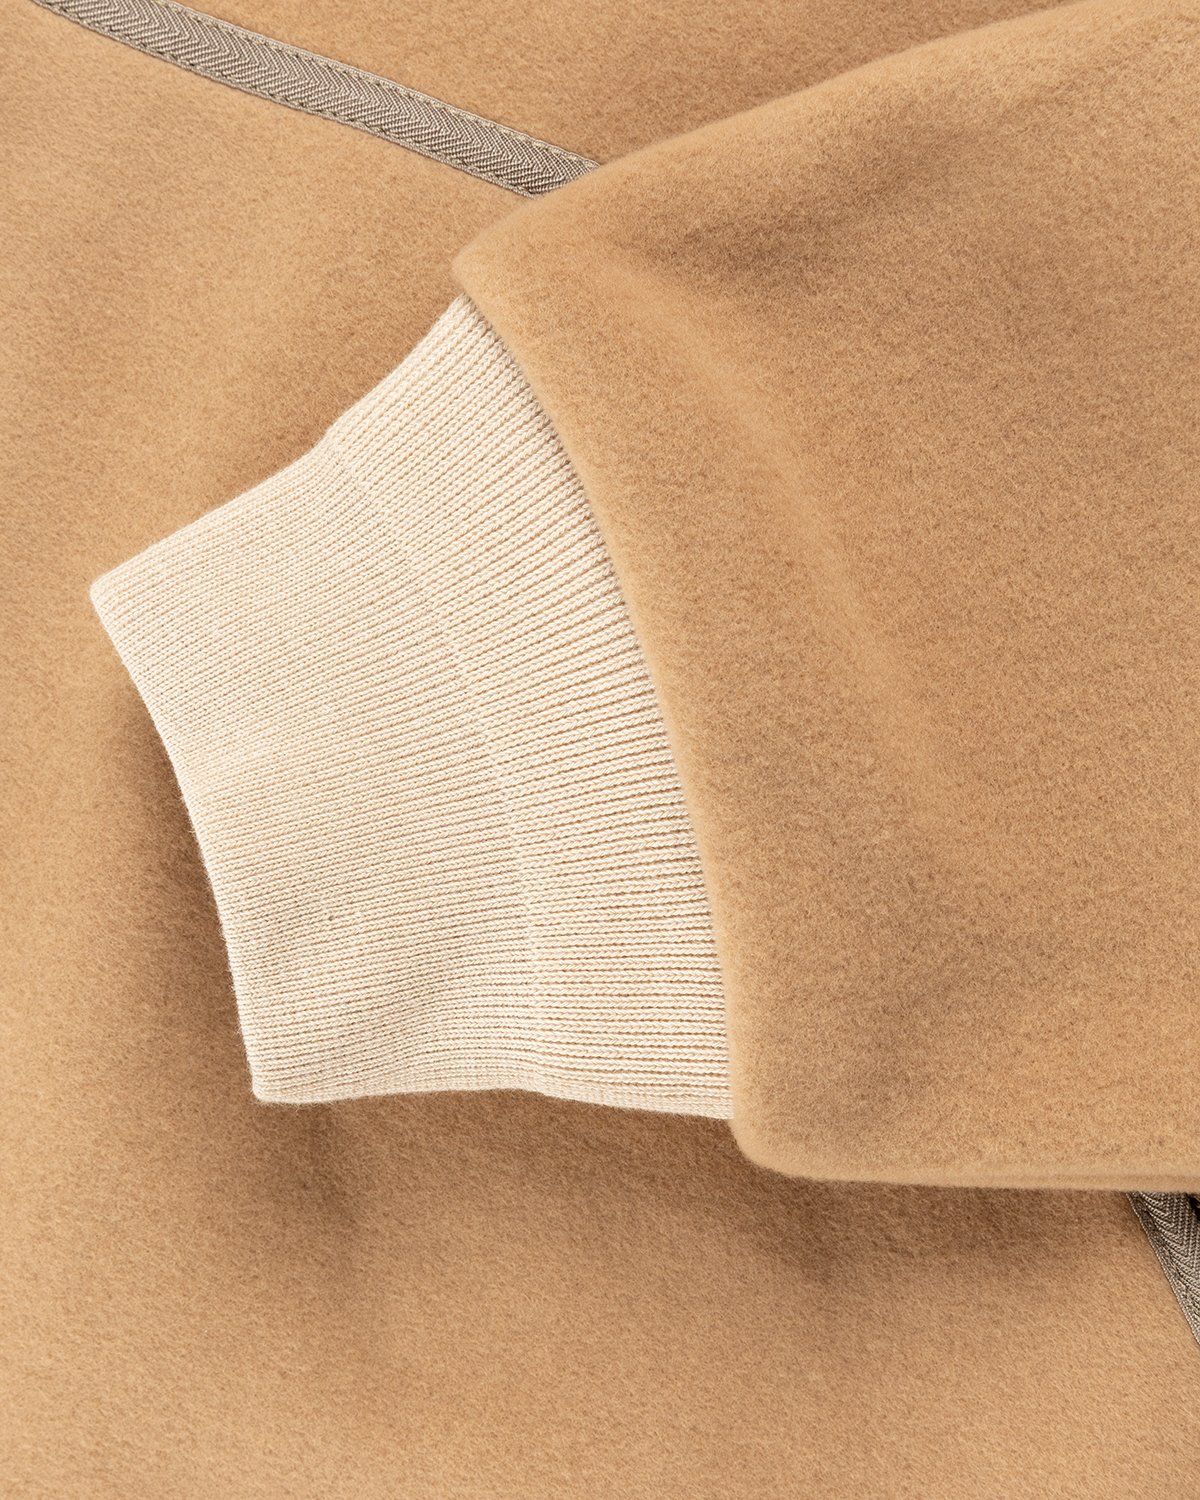 Acne Studios – Polar Fleece Jacket Camel Brown - Outerwear - Brown - Image 5